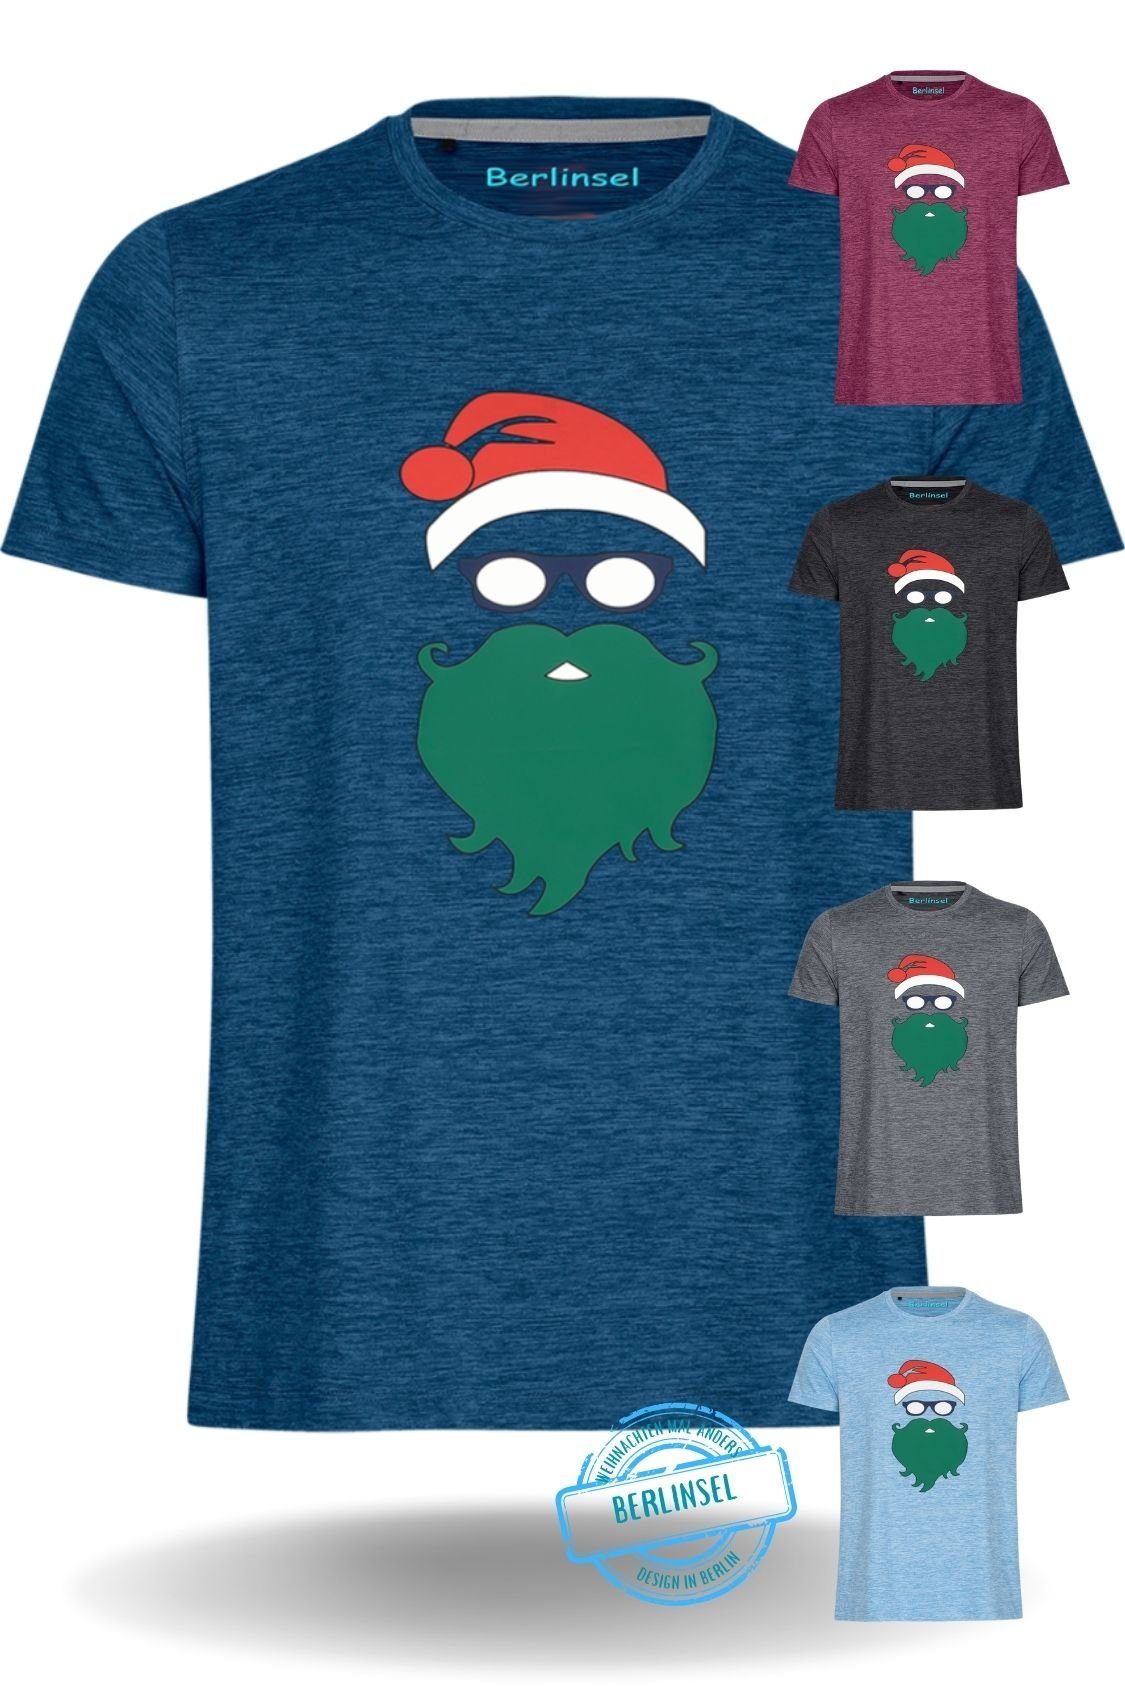 Berlinsel T-Shirt Weihnachtsfoto Männer Herren blau Weihnachtsoutfit Weihnachtsshirt Weihnachtsfeier, Printshirt Weihnachtsgeschenk